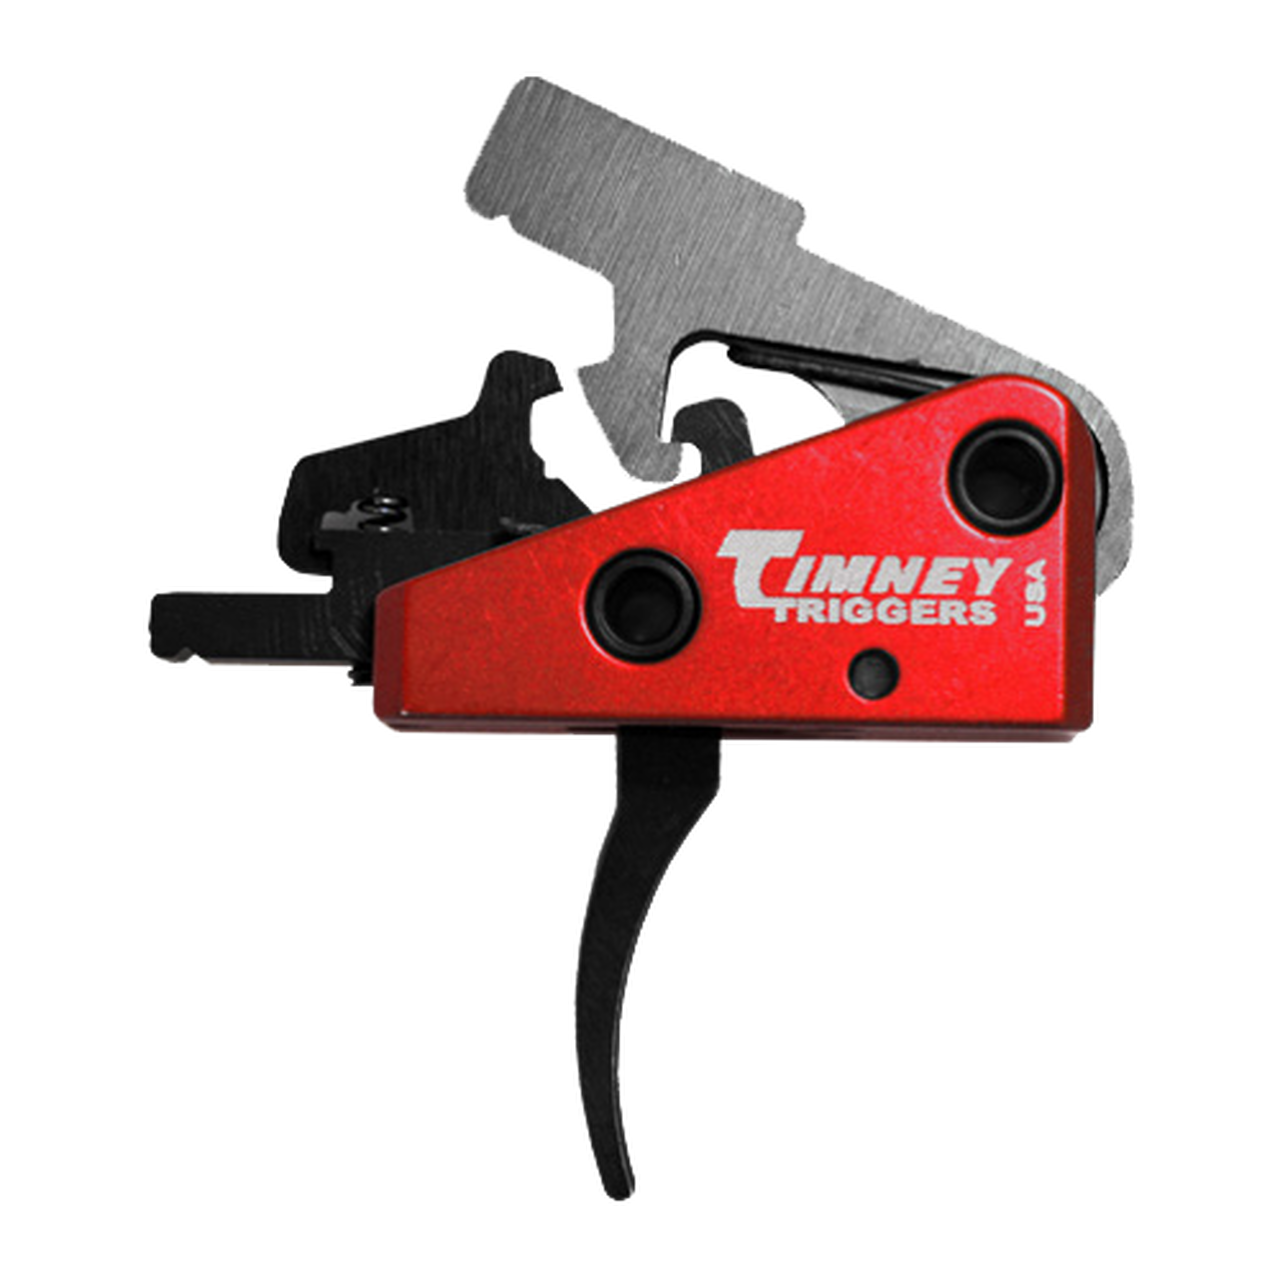 Spoušťový mechanismus Timney Targa pro pušky AR - krátký chod